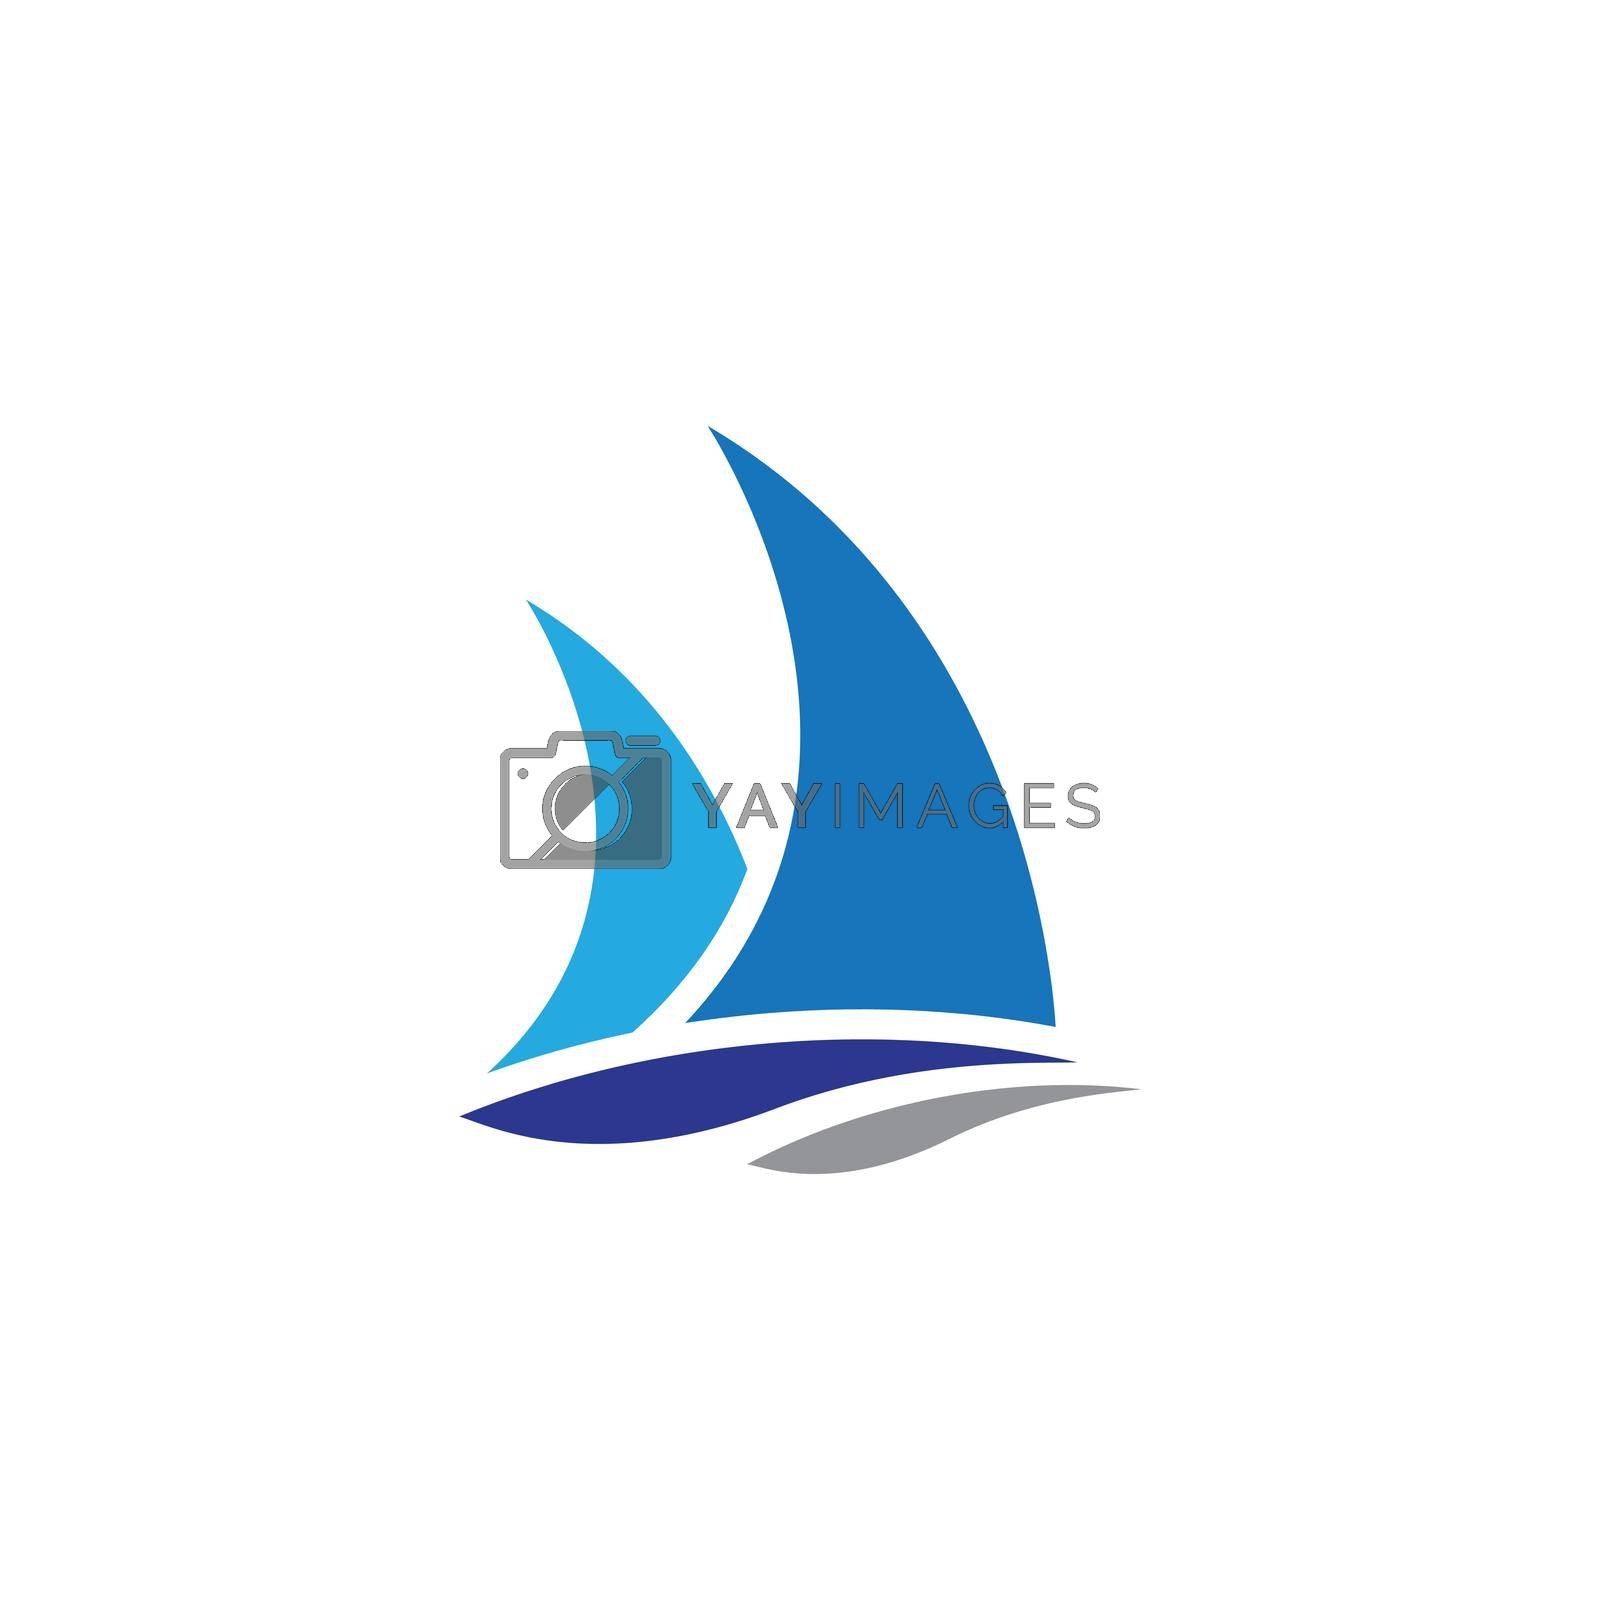 Cruise ship logo template vector icon illustration